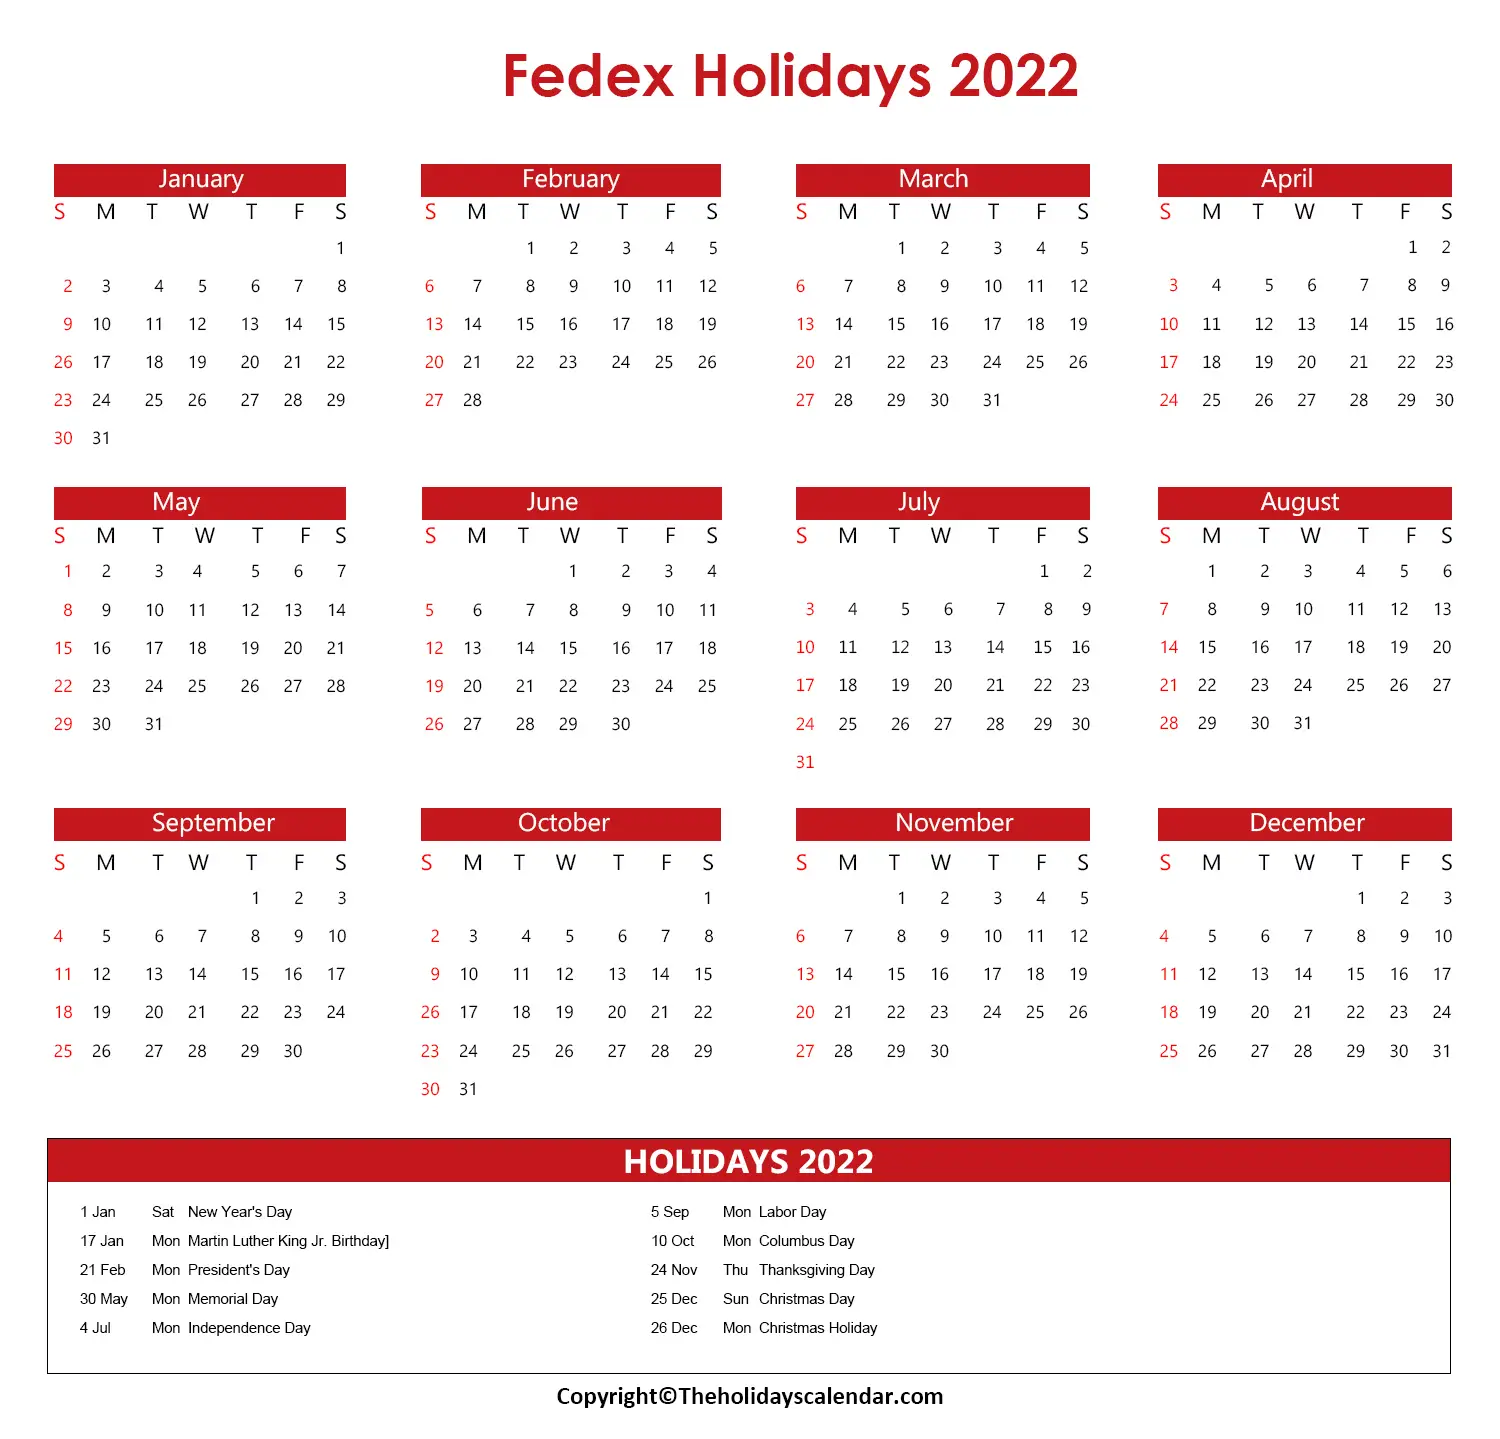 Fedex Holidays 2022 Calendar Fedex Holiday Schedule 2022